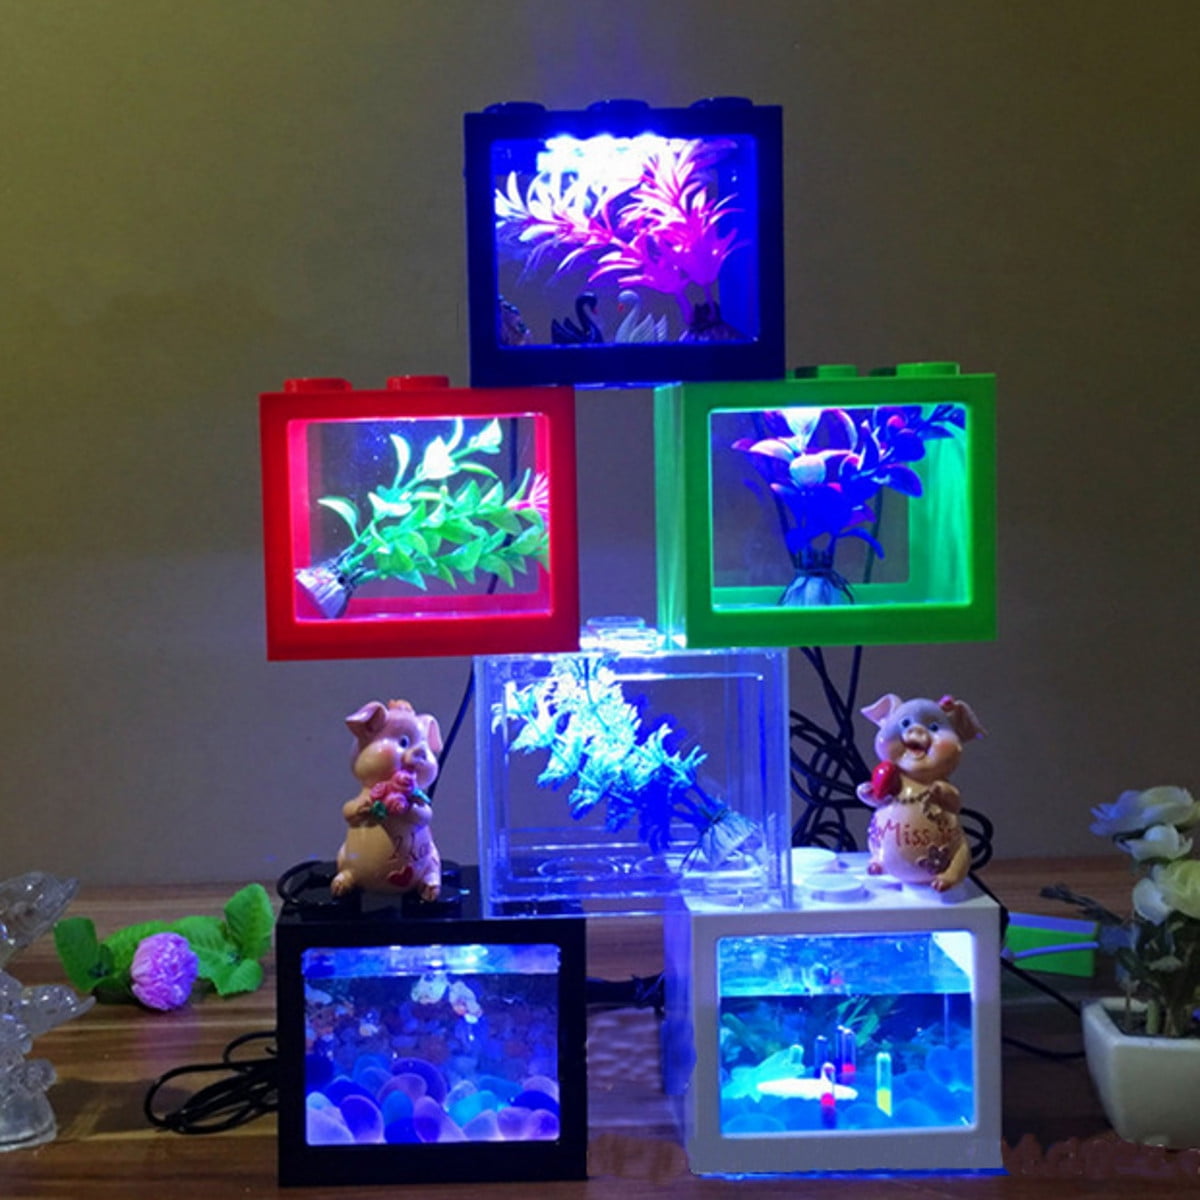 Greenfields 5 Litre Glass Fish Bowl LED Light Aquarium Goldfish Betta Tank Accessories 